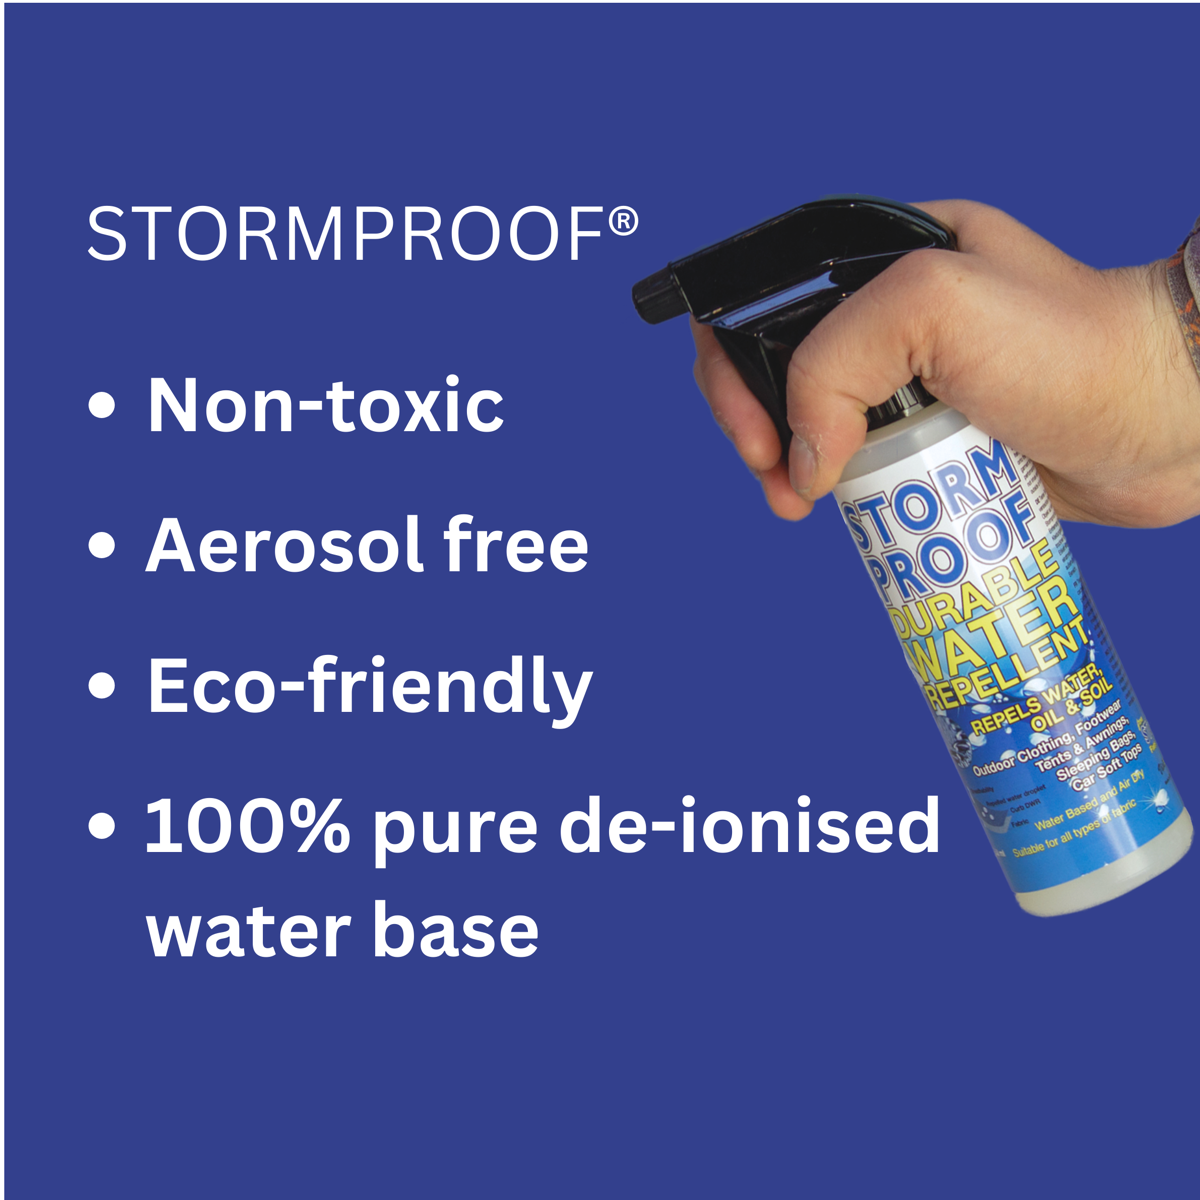 Stormsure Stormproof Durable Water Repellent 250ml